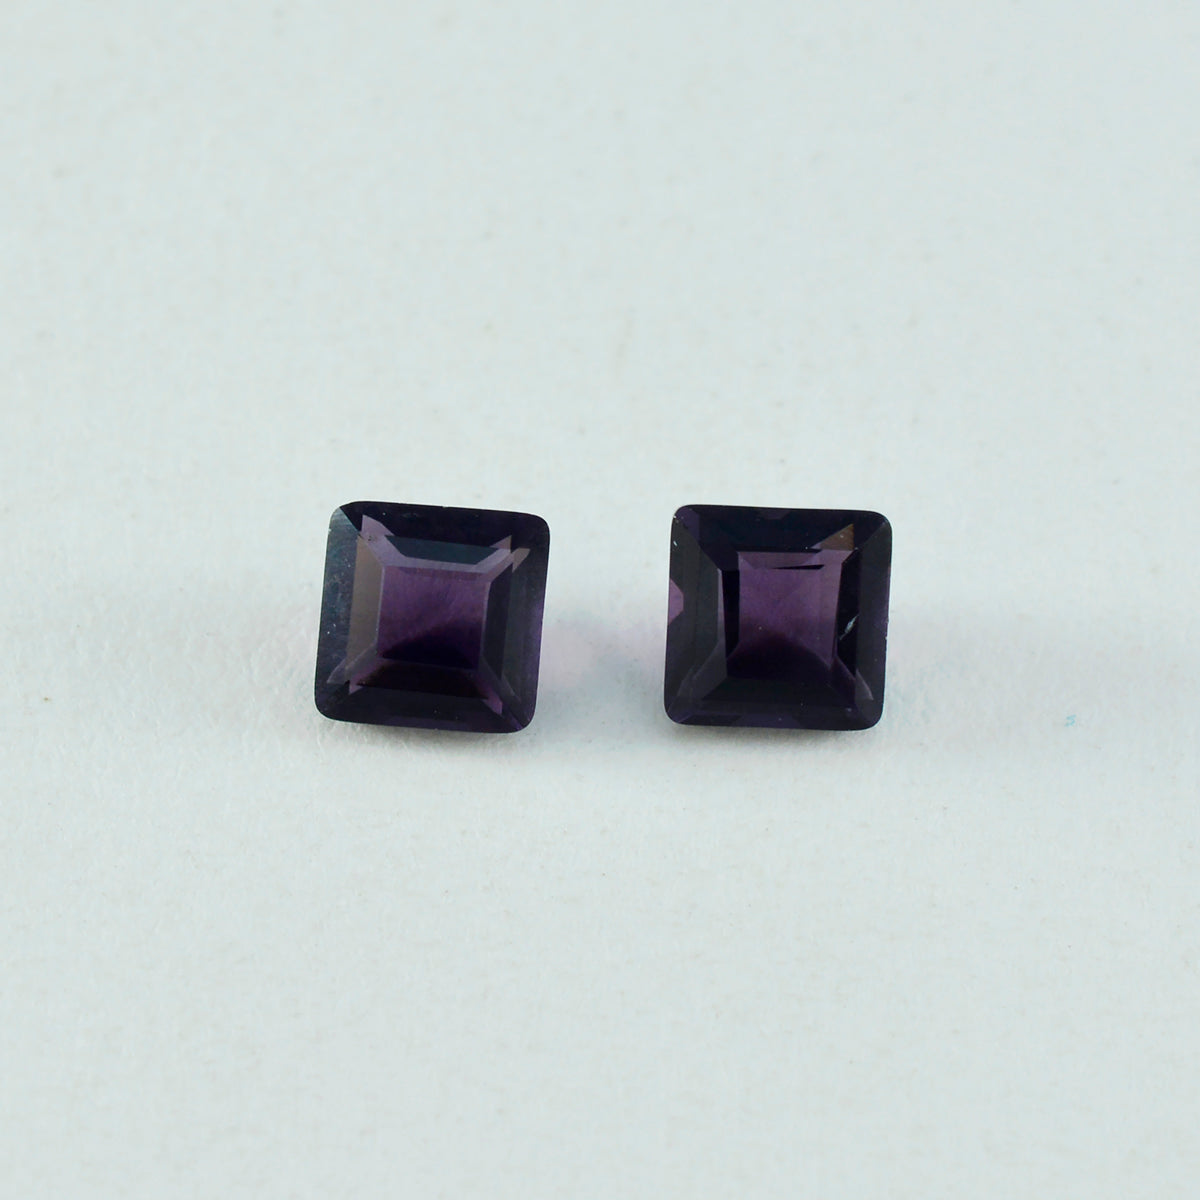 riyogems 1 шт. фиолетовый аметист cz граненый 11x11 мм квадратной формы милый качественный свободный камень